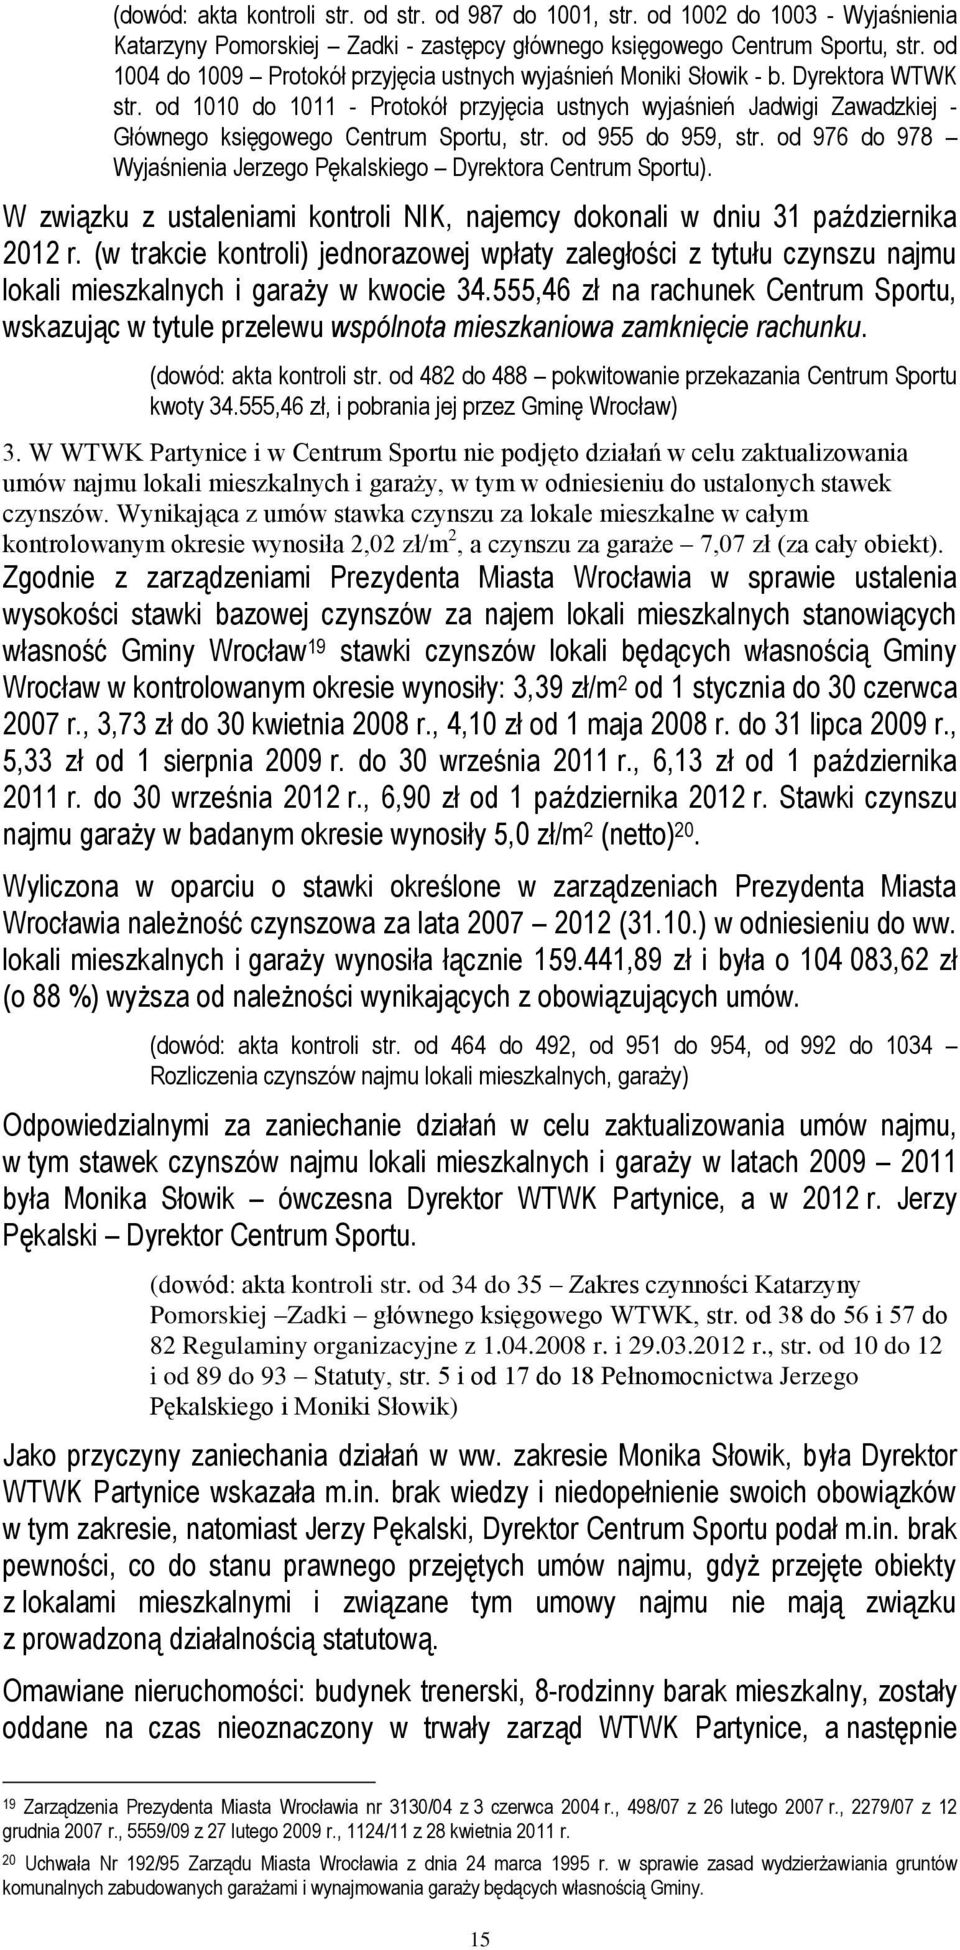 od 1010 do 1011 - Protokół przyjęcia ustnych wyjaśnień Jadwigi Zawadzkiej - Głównego księgowego Centrum Sportu, str. od 955 do 959, str.